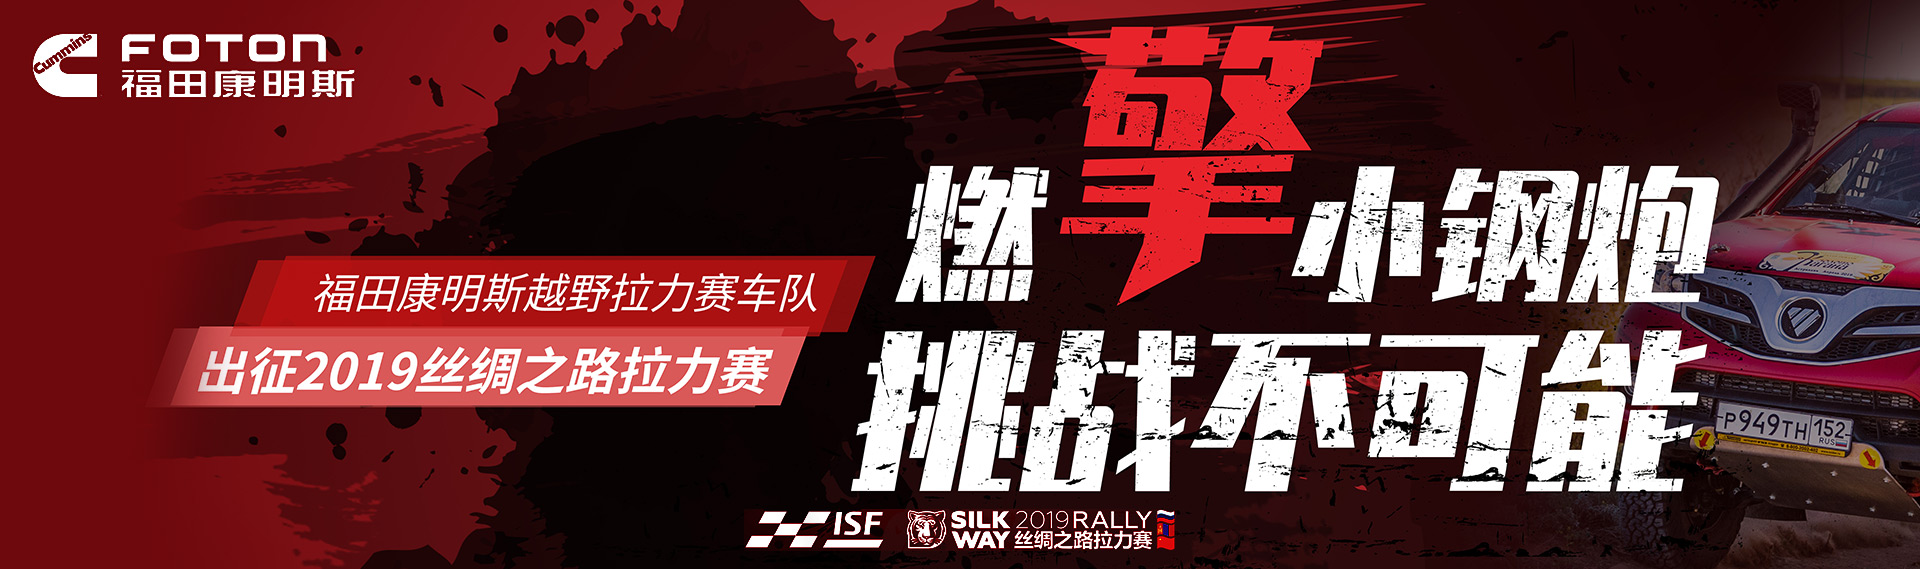 福田康明斯越野拉力赛车队出征2019丝绸之路拉力赛